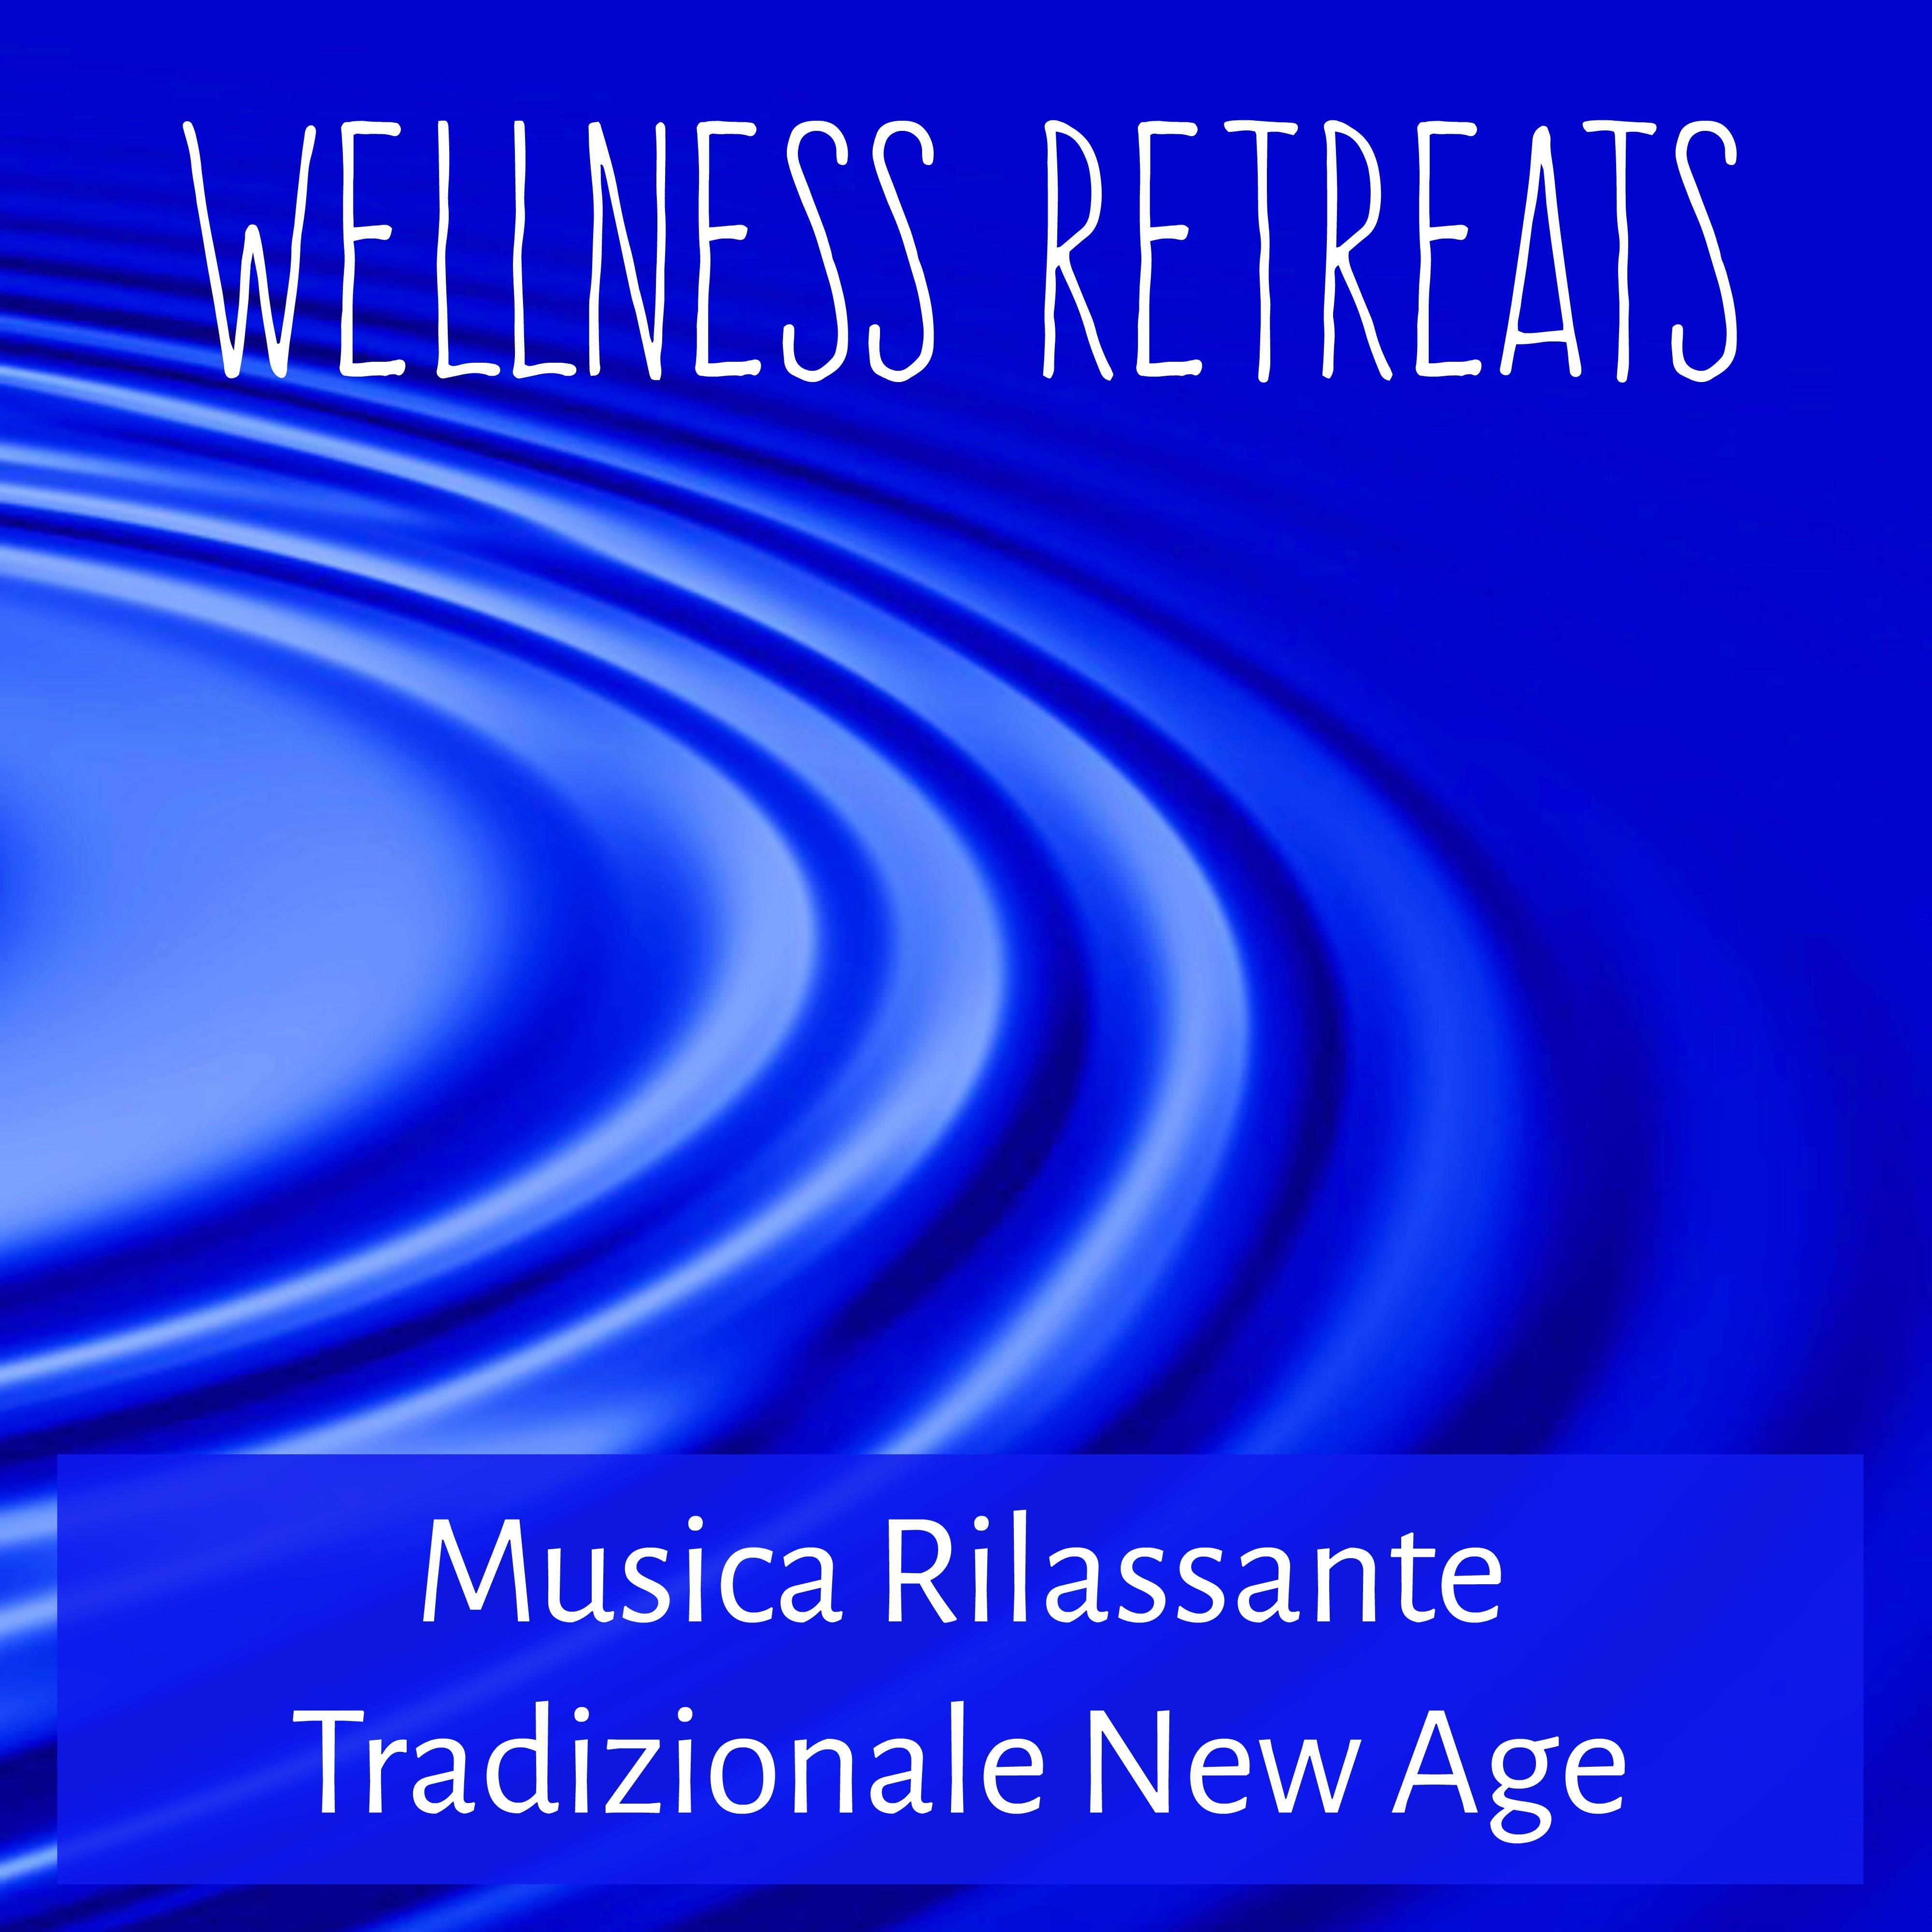 Wellness Retreats - Musica Rilassante Tradizionale New Age per Esercizi Meditazione Calma Interiore Training Autogeno Equilibrare Chakra con Suoni della Natura Strumentali Binaurali